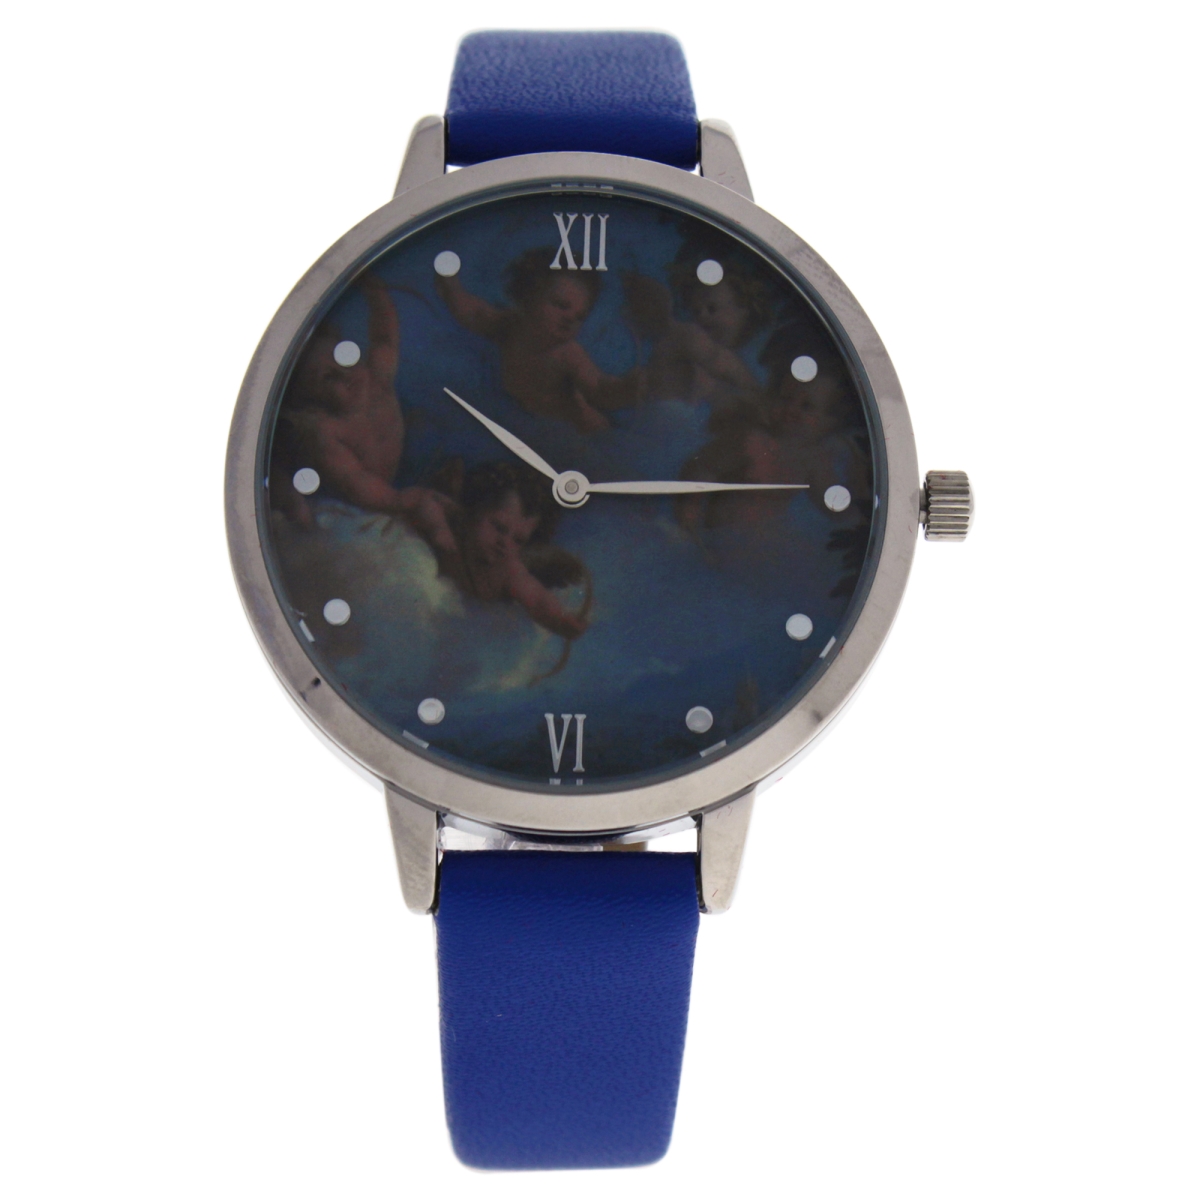 W-wat-1517 La Romance - Silver & Blue Leather Strap Watch For Women - Crr007